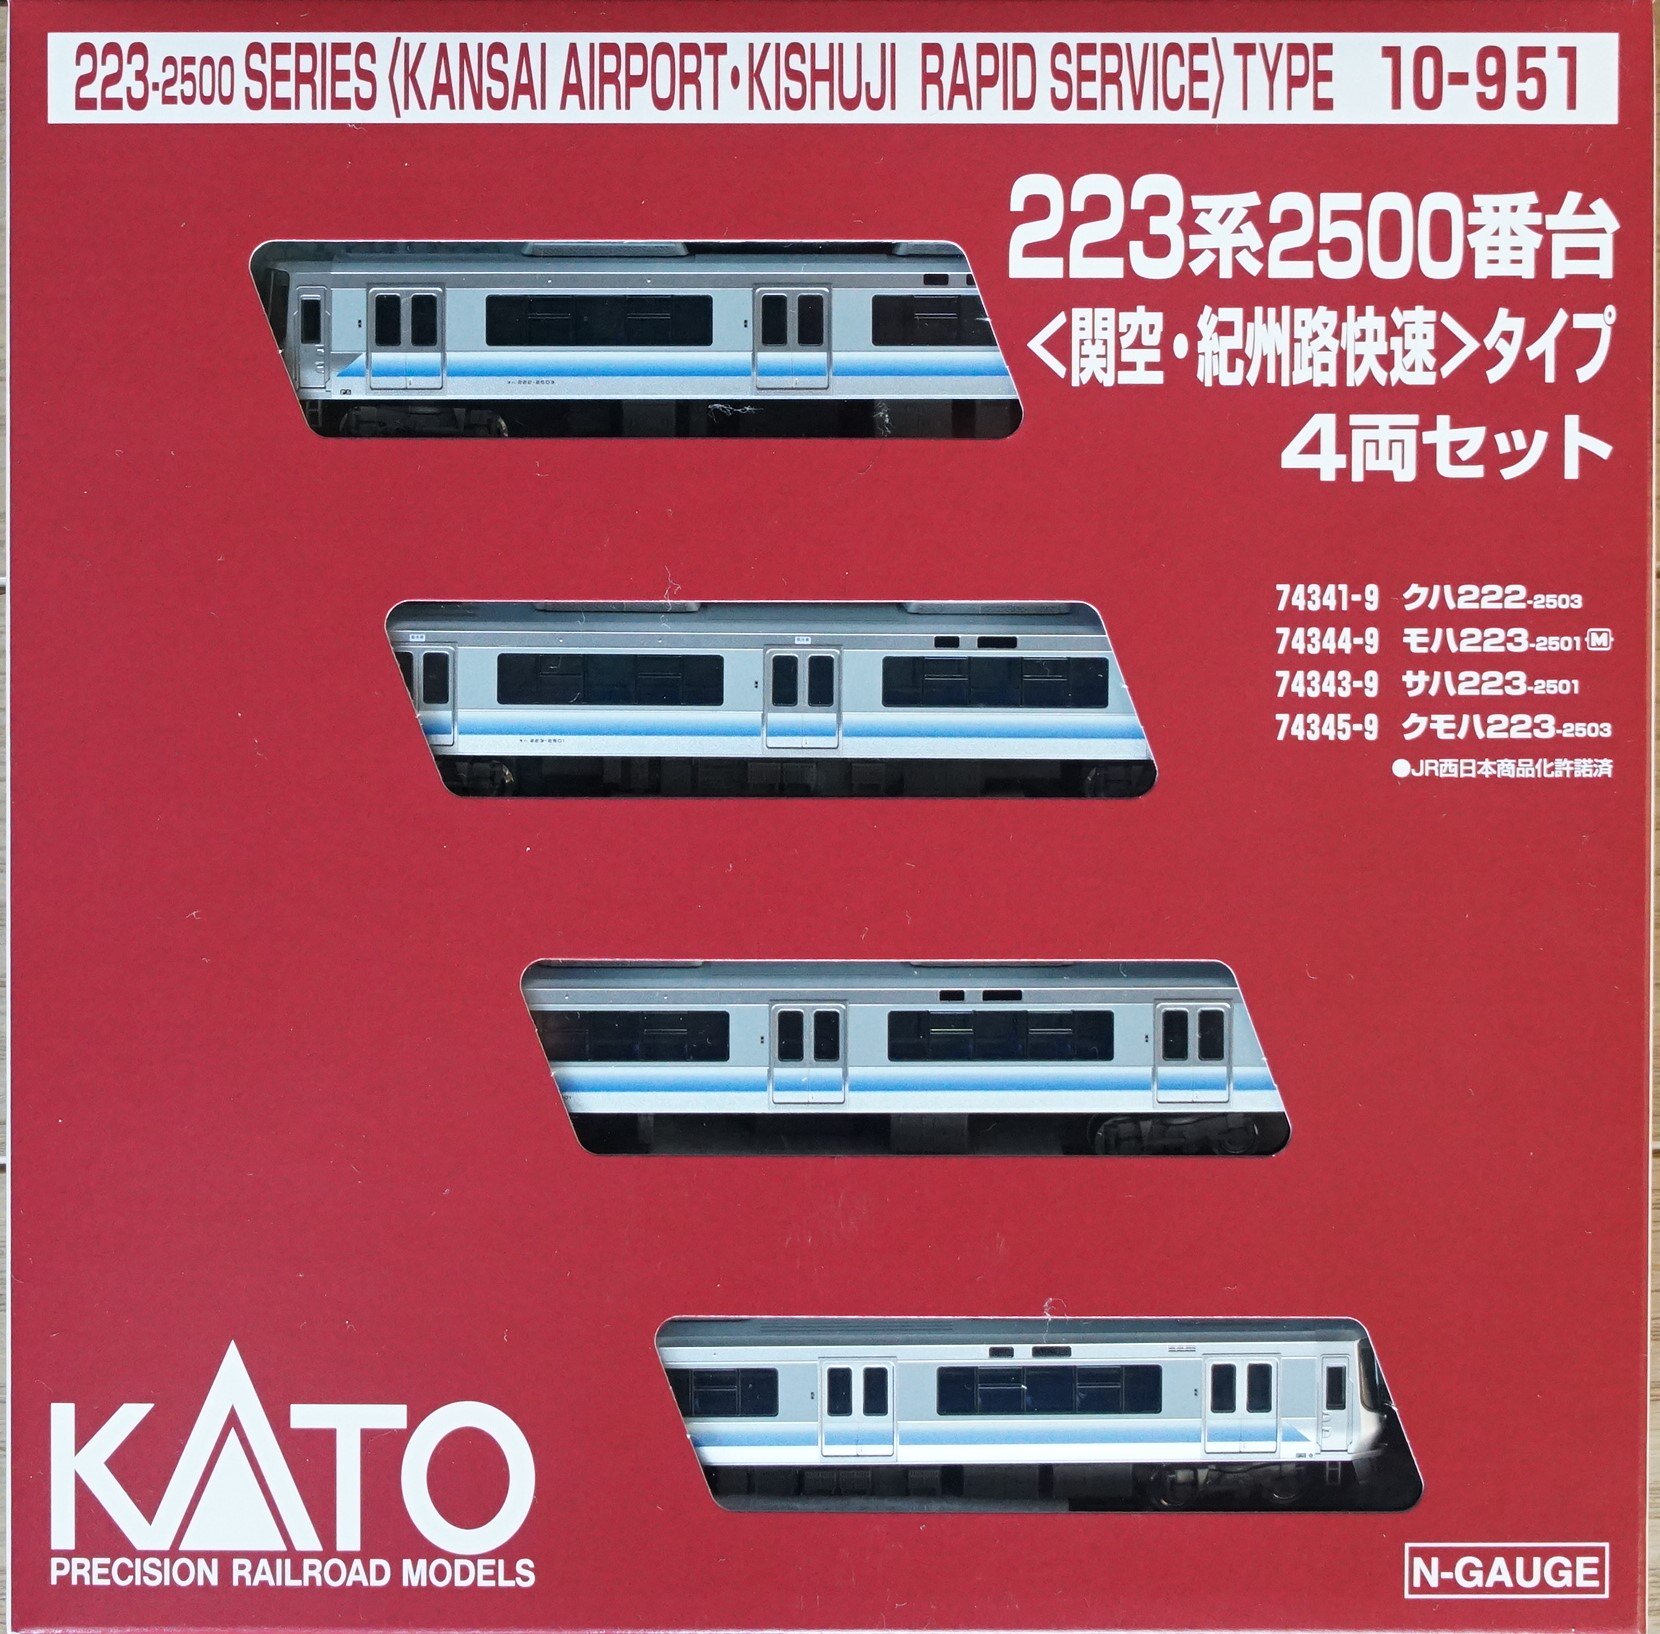 223系 2500番台 関空・紀州路快速 4両 Bトレインショーティー - 鉄道模型